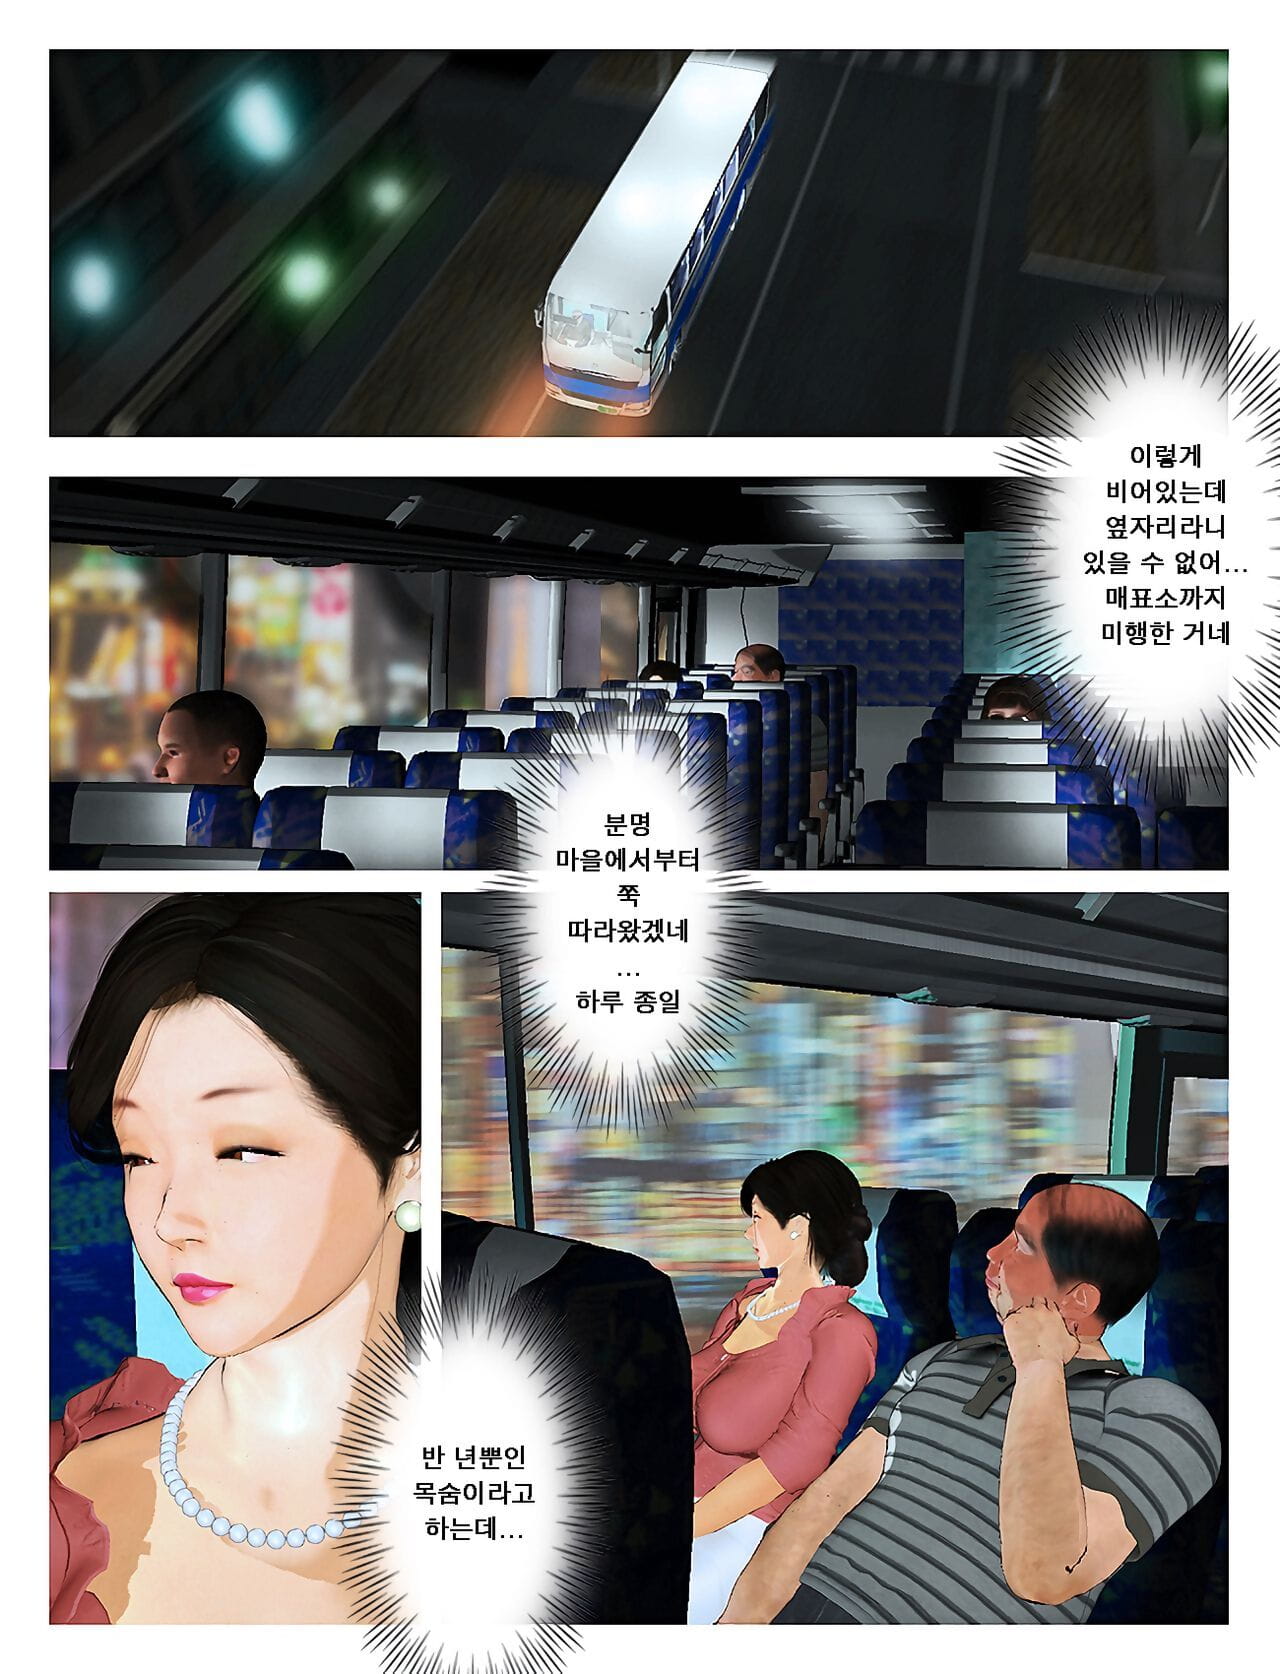 töten die König Kyou keine misako san 2019:2 오늘의 미사코씨 2019:2 Koreanisch Teil 2 page 1